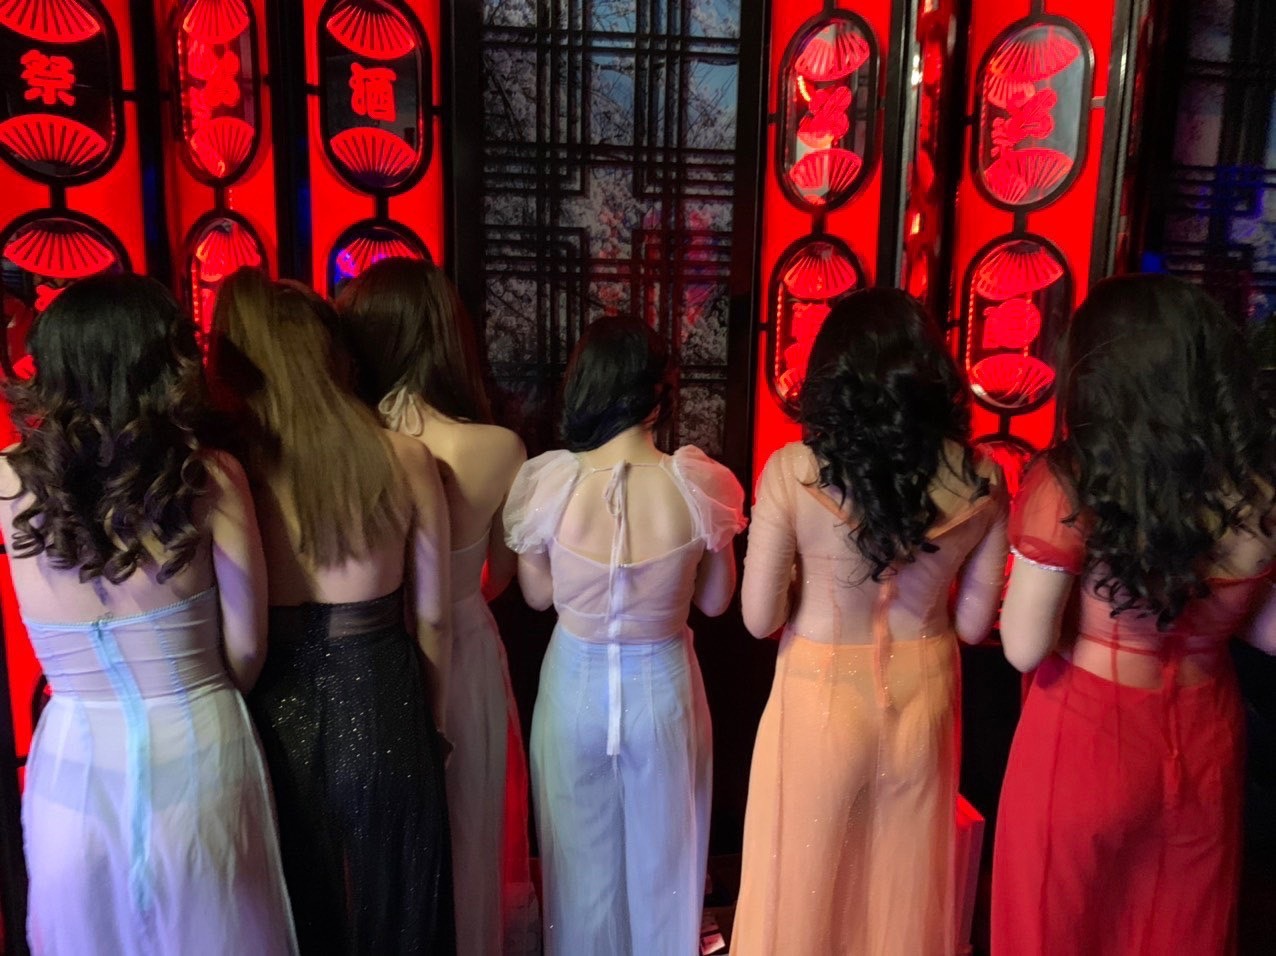 70 nữ tiếp viên mặc mát mẻ chờ phục vụ khách tại điểm karaoke trung tâm TP.HCM